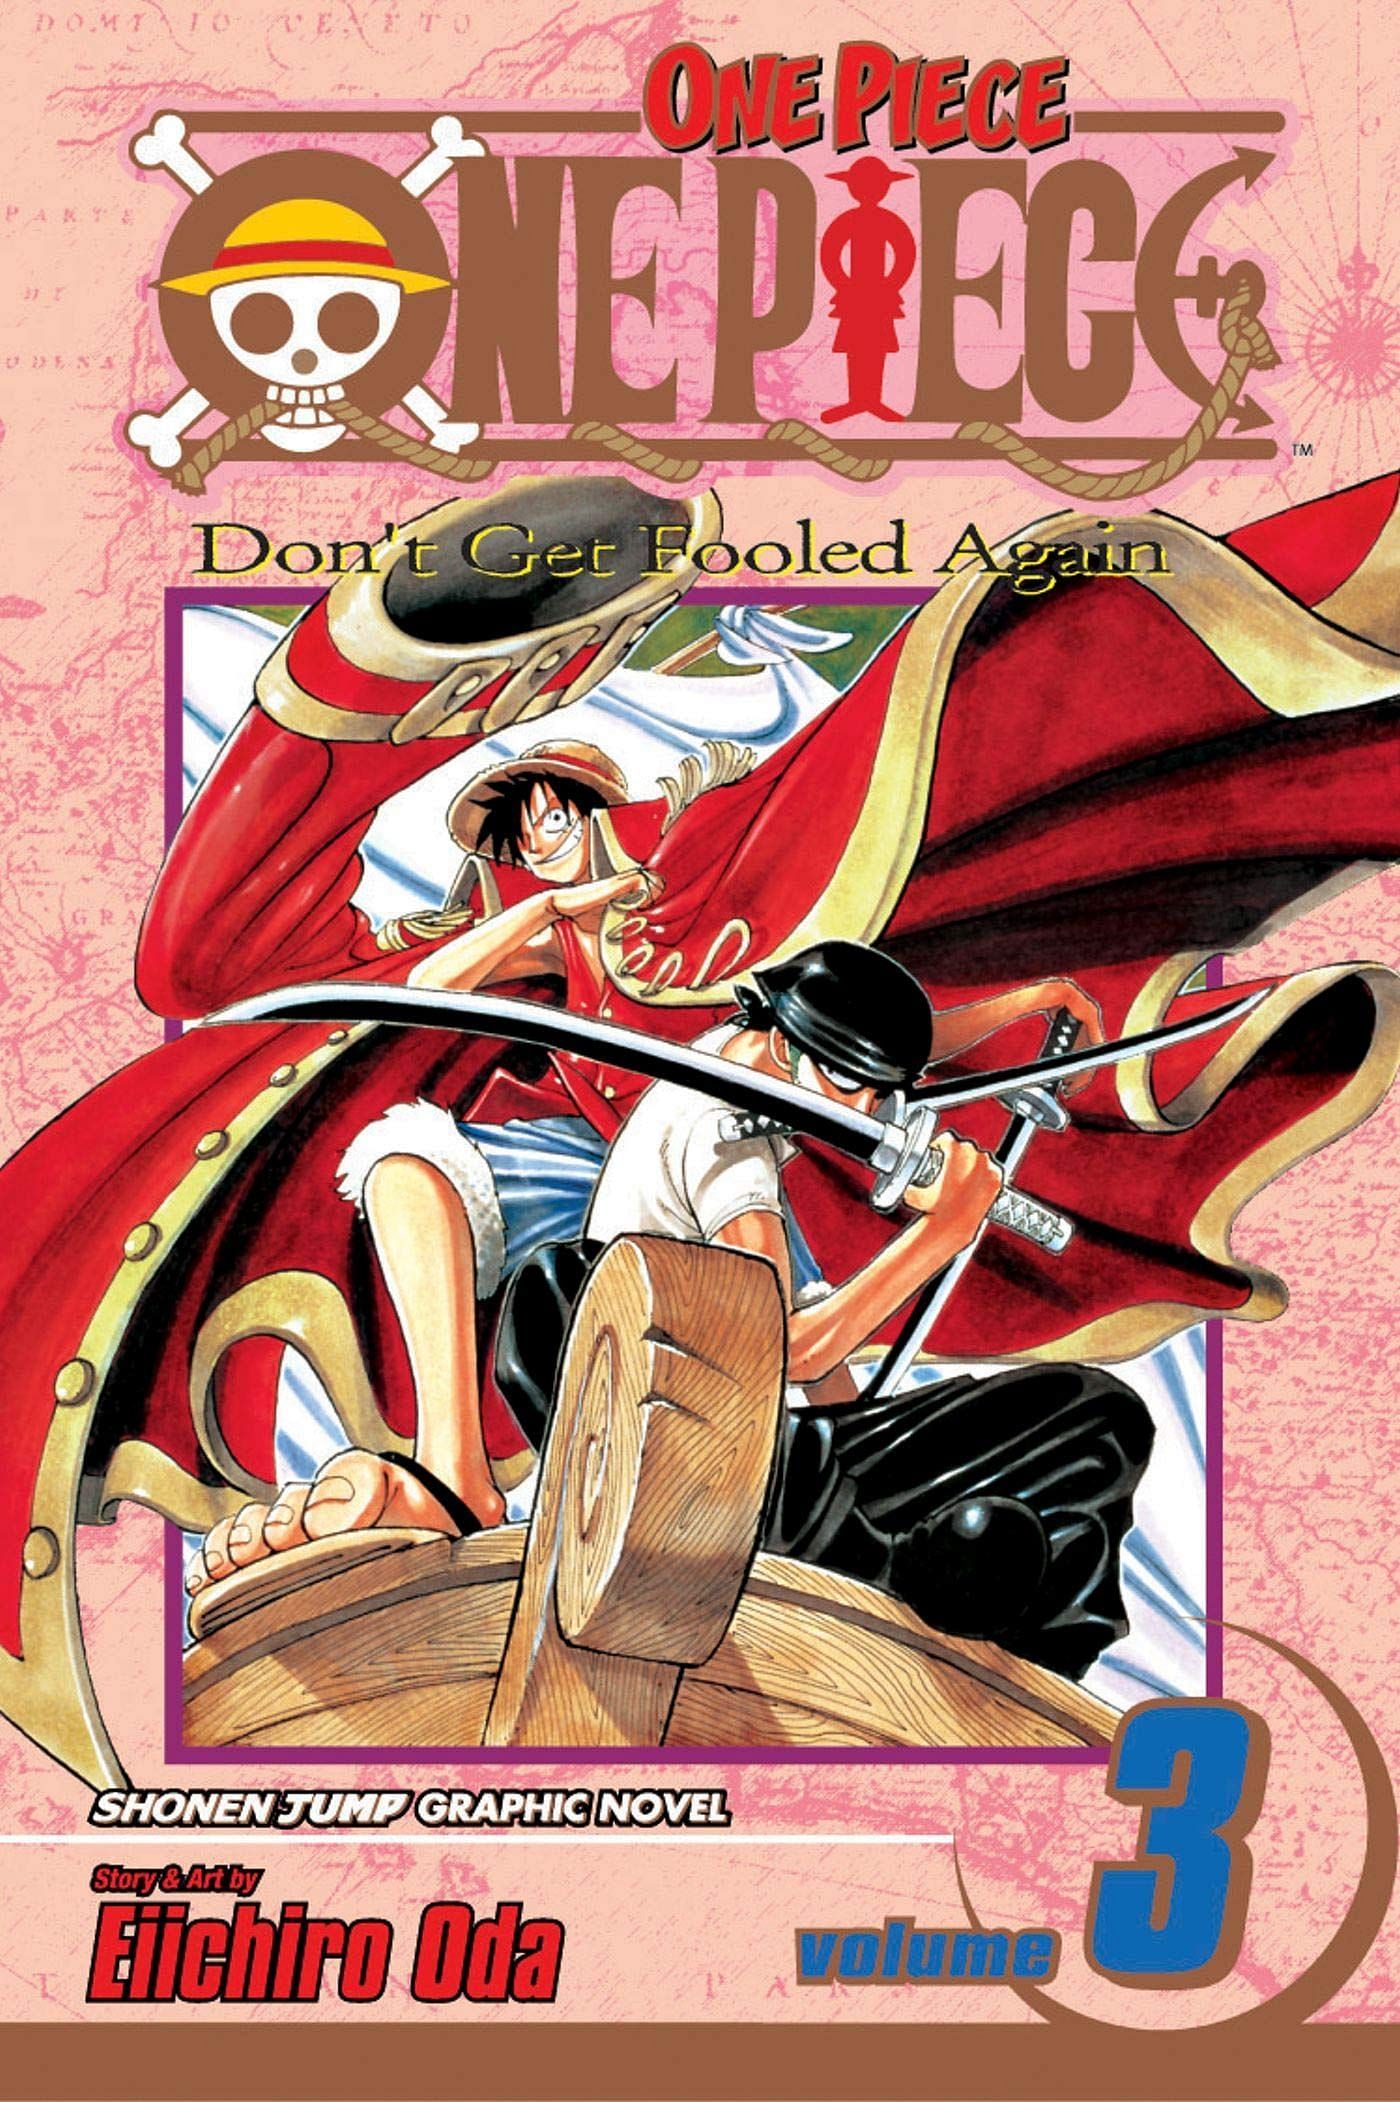 The cover art for One Piece Volume 3 (Image via Shueisha)